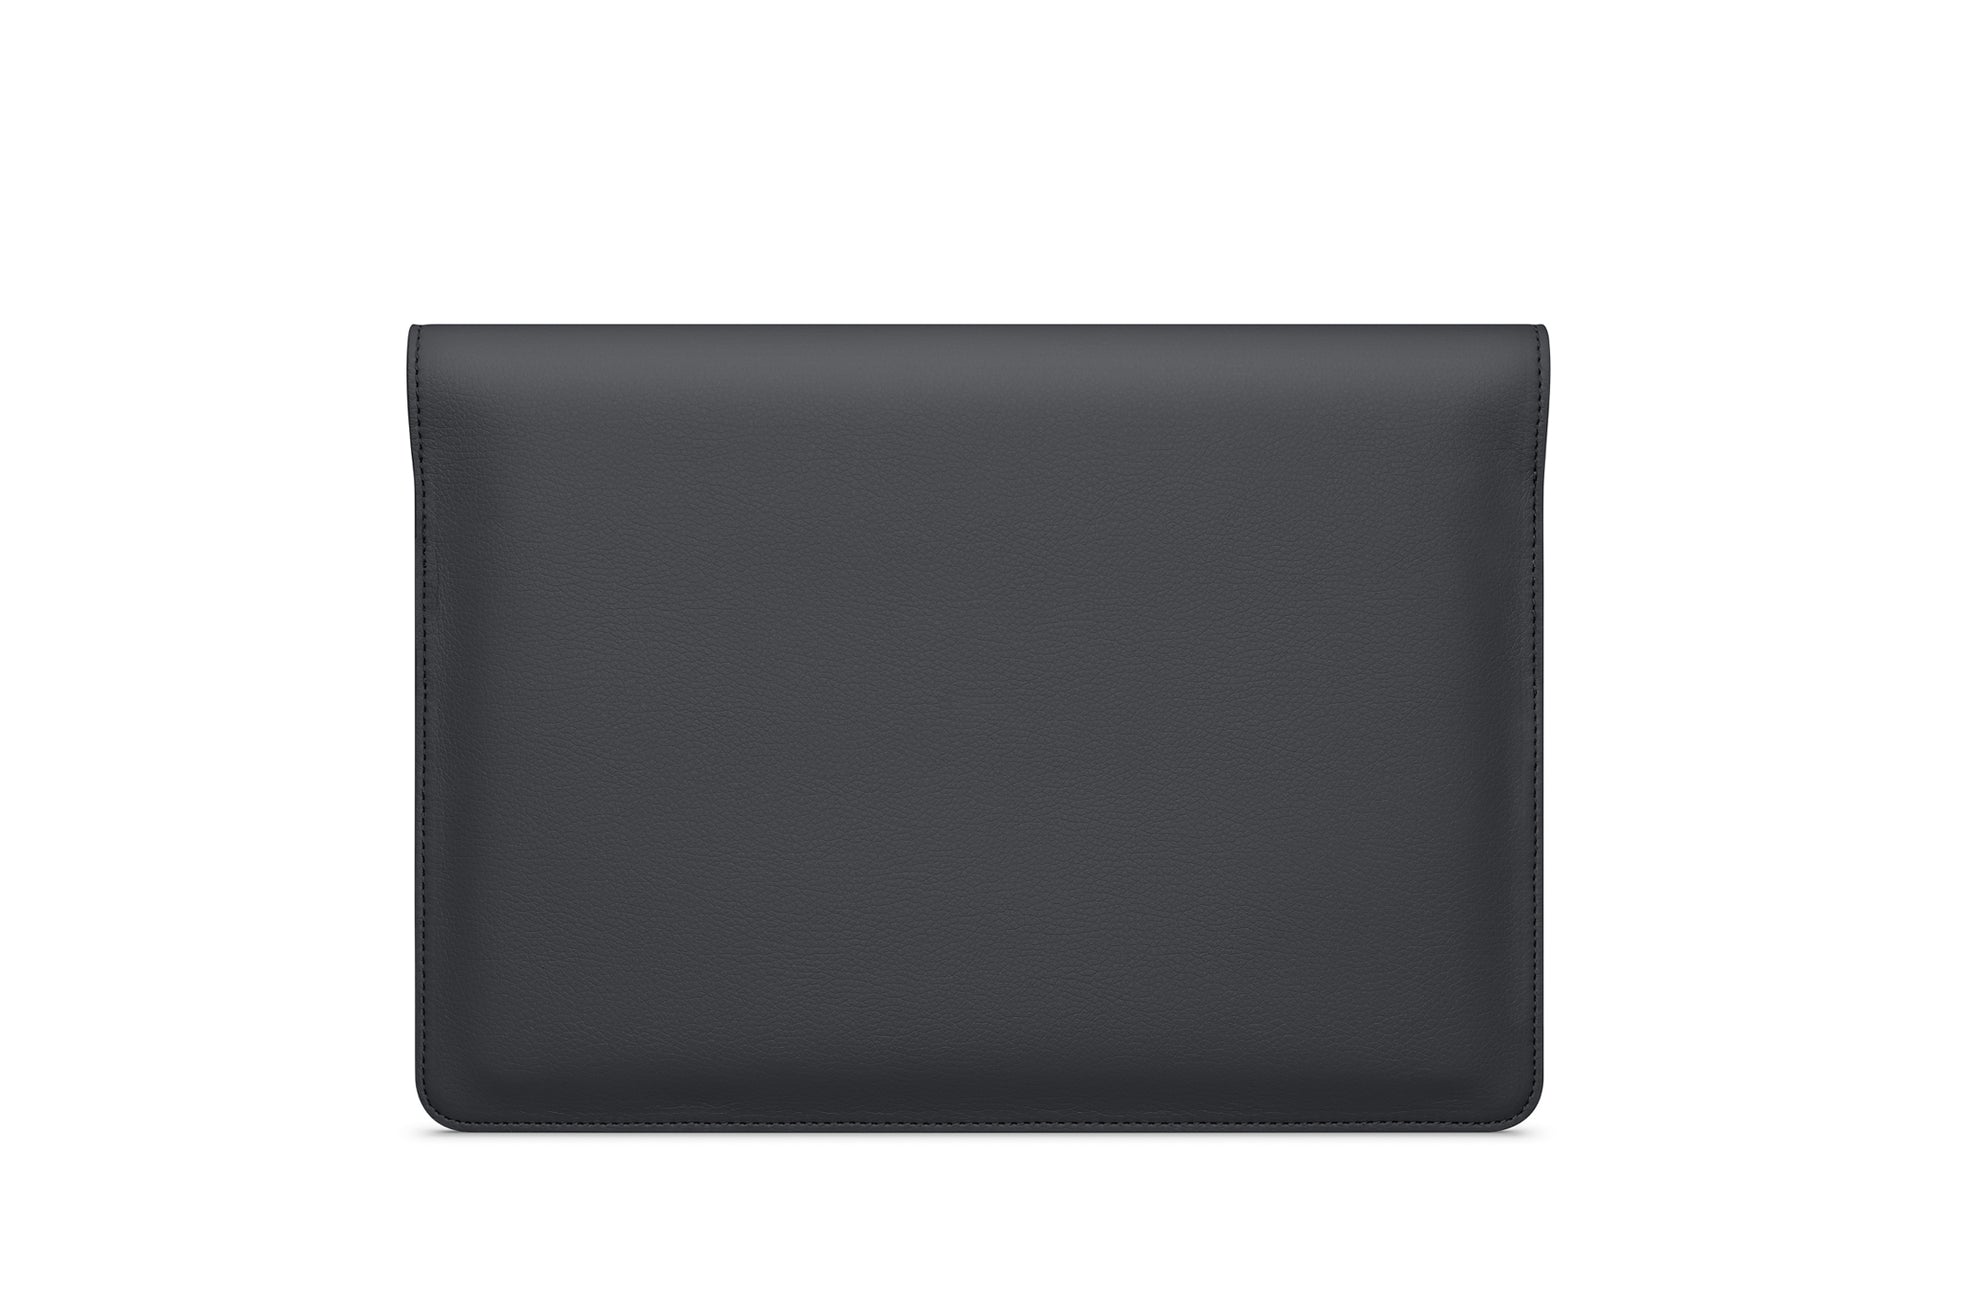 The MacBook Portfolio 13-inch - Sample Sale in Technik in Black image 7